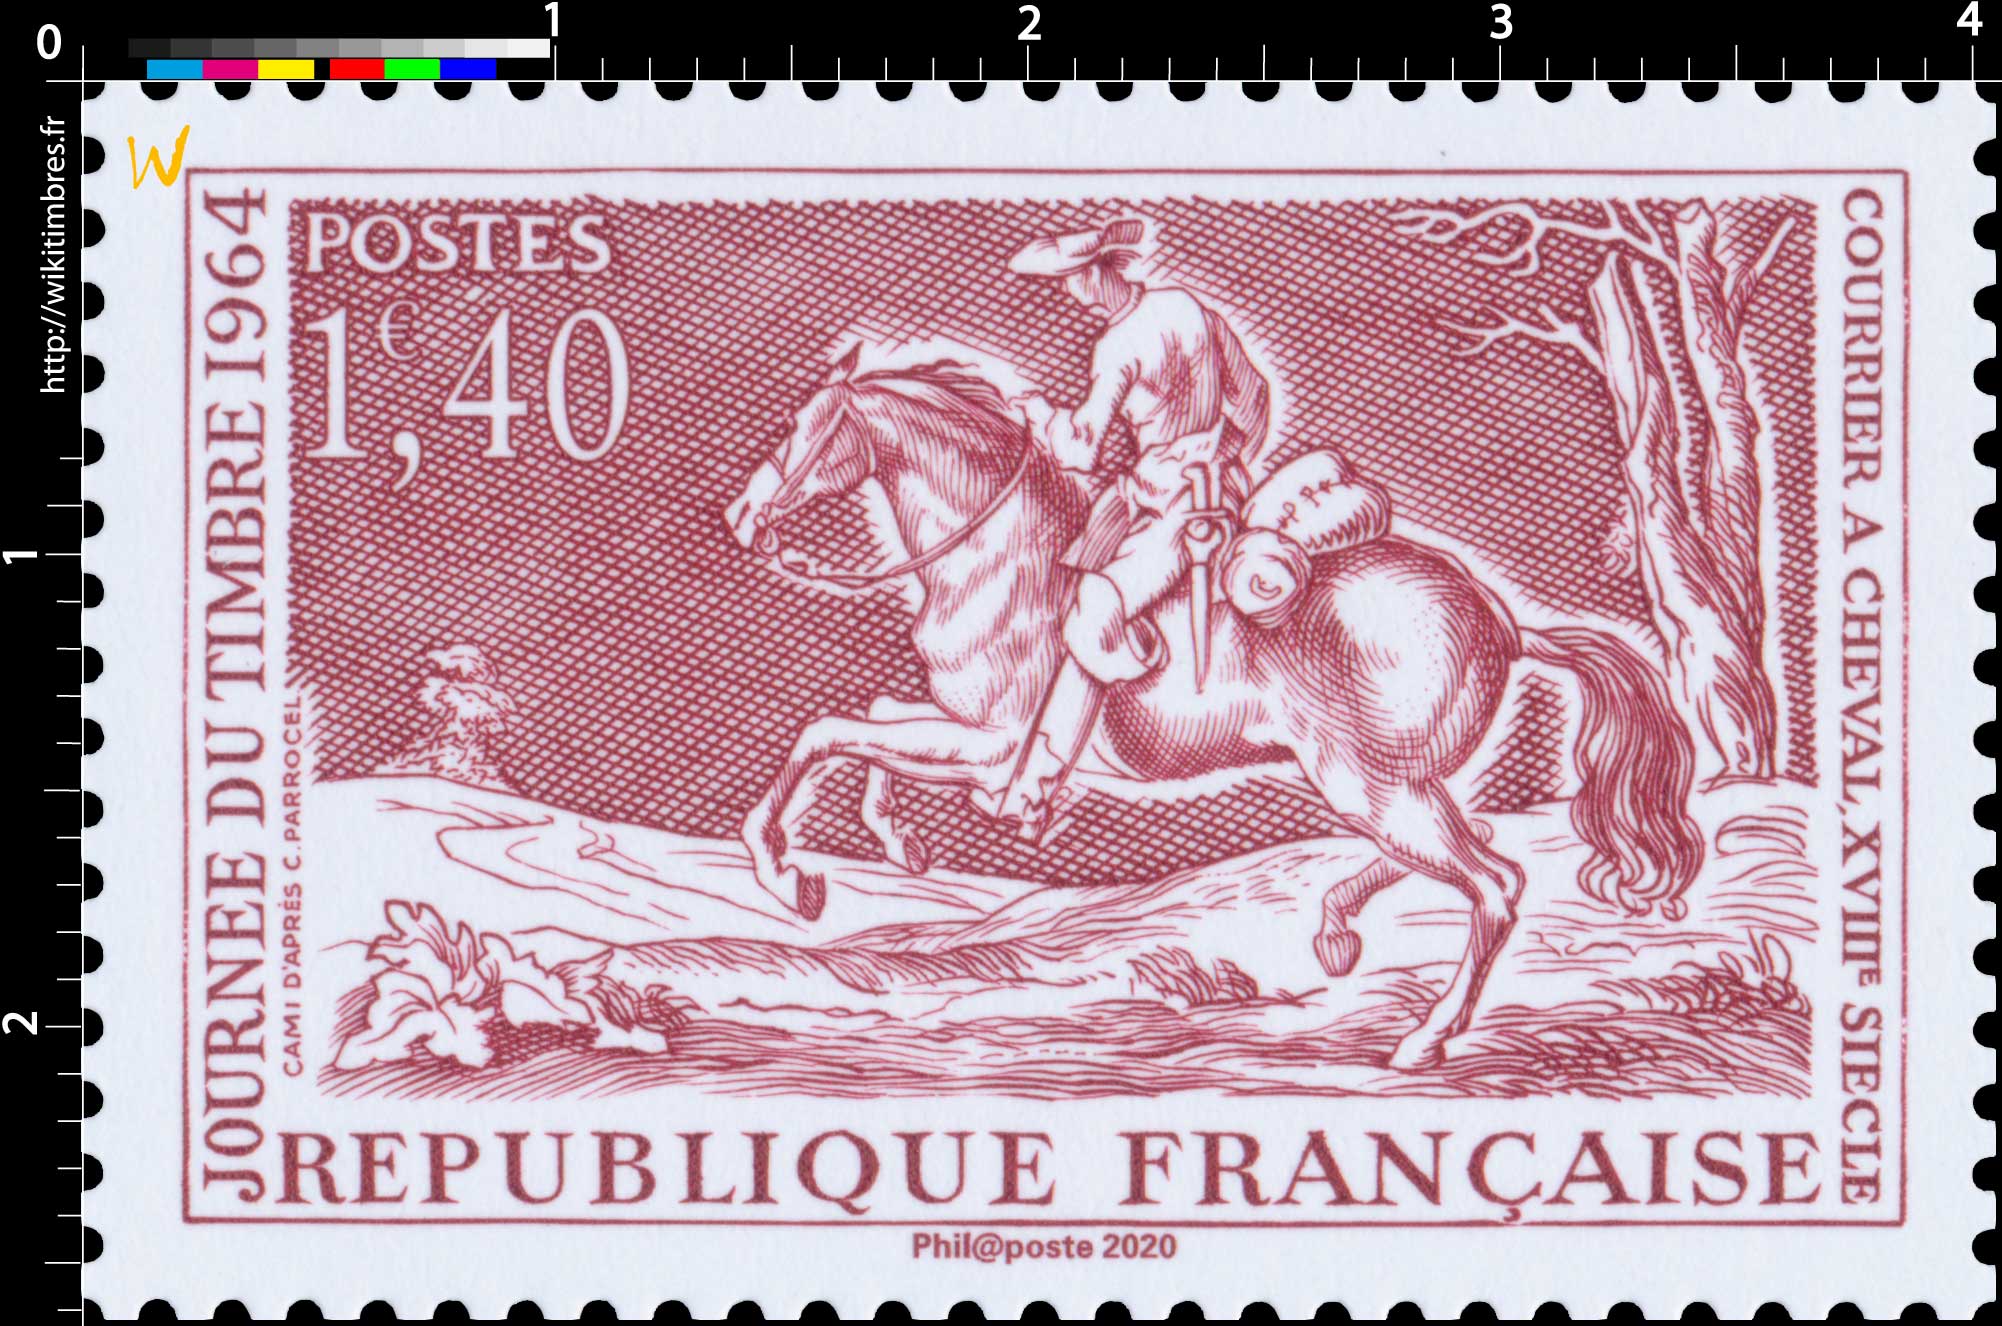 2020 Patrimoine de France - JOURNÉE DU TIMBRE 1964 COURRIER A CHEVAL, XVIIIe SIÈCLE